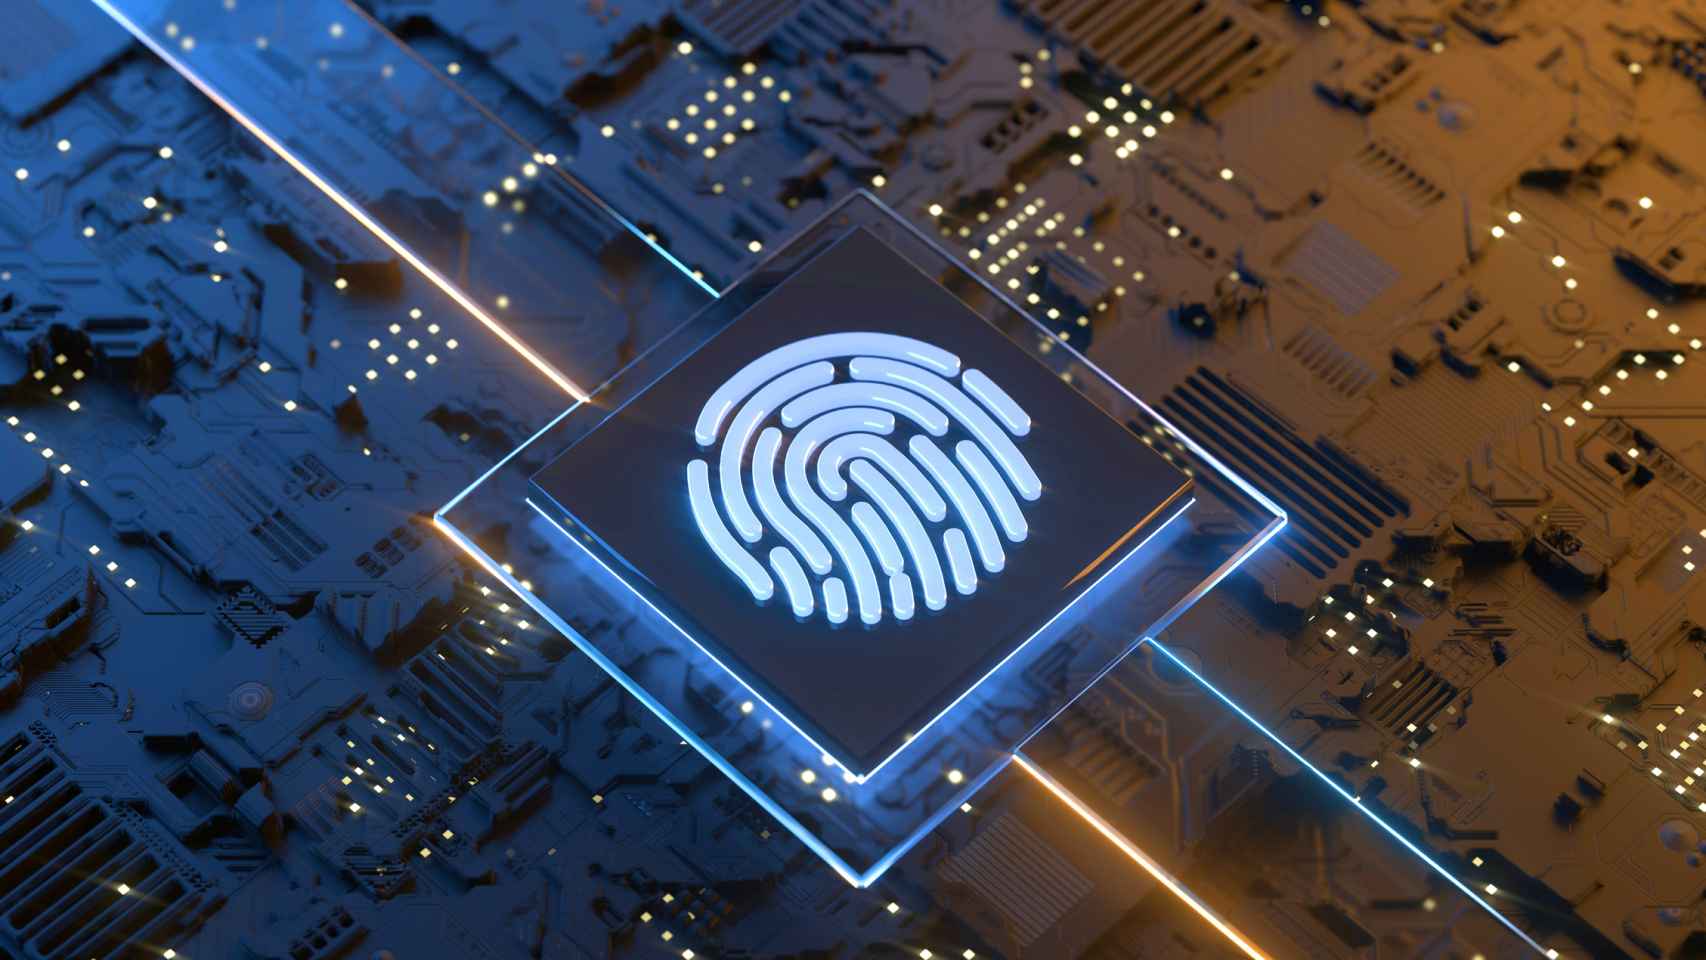 La búsqueda de nuevas formas de autenticación ha llevado al descubrimiento de la tecnología biométrica.